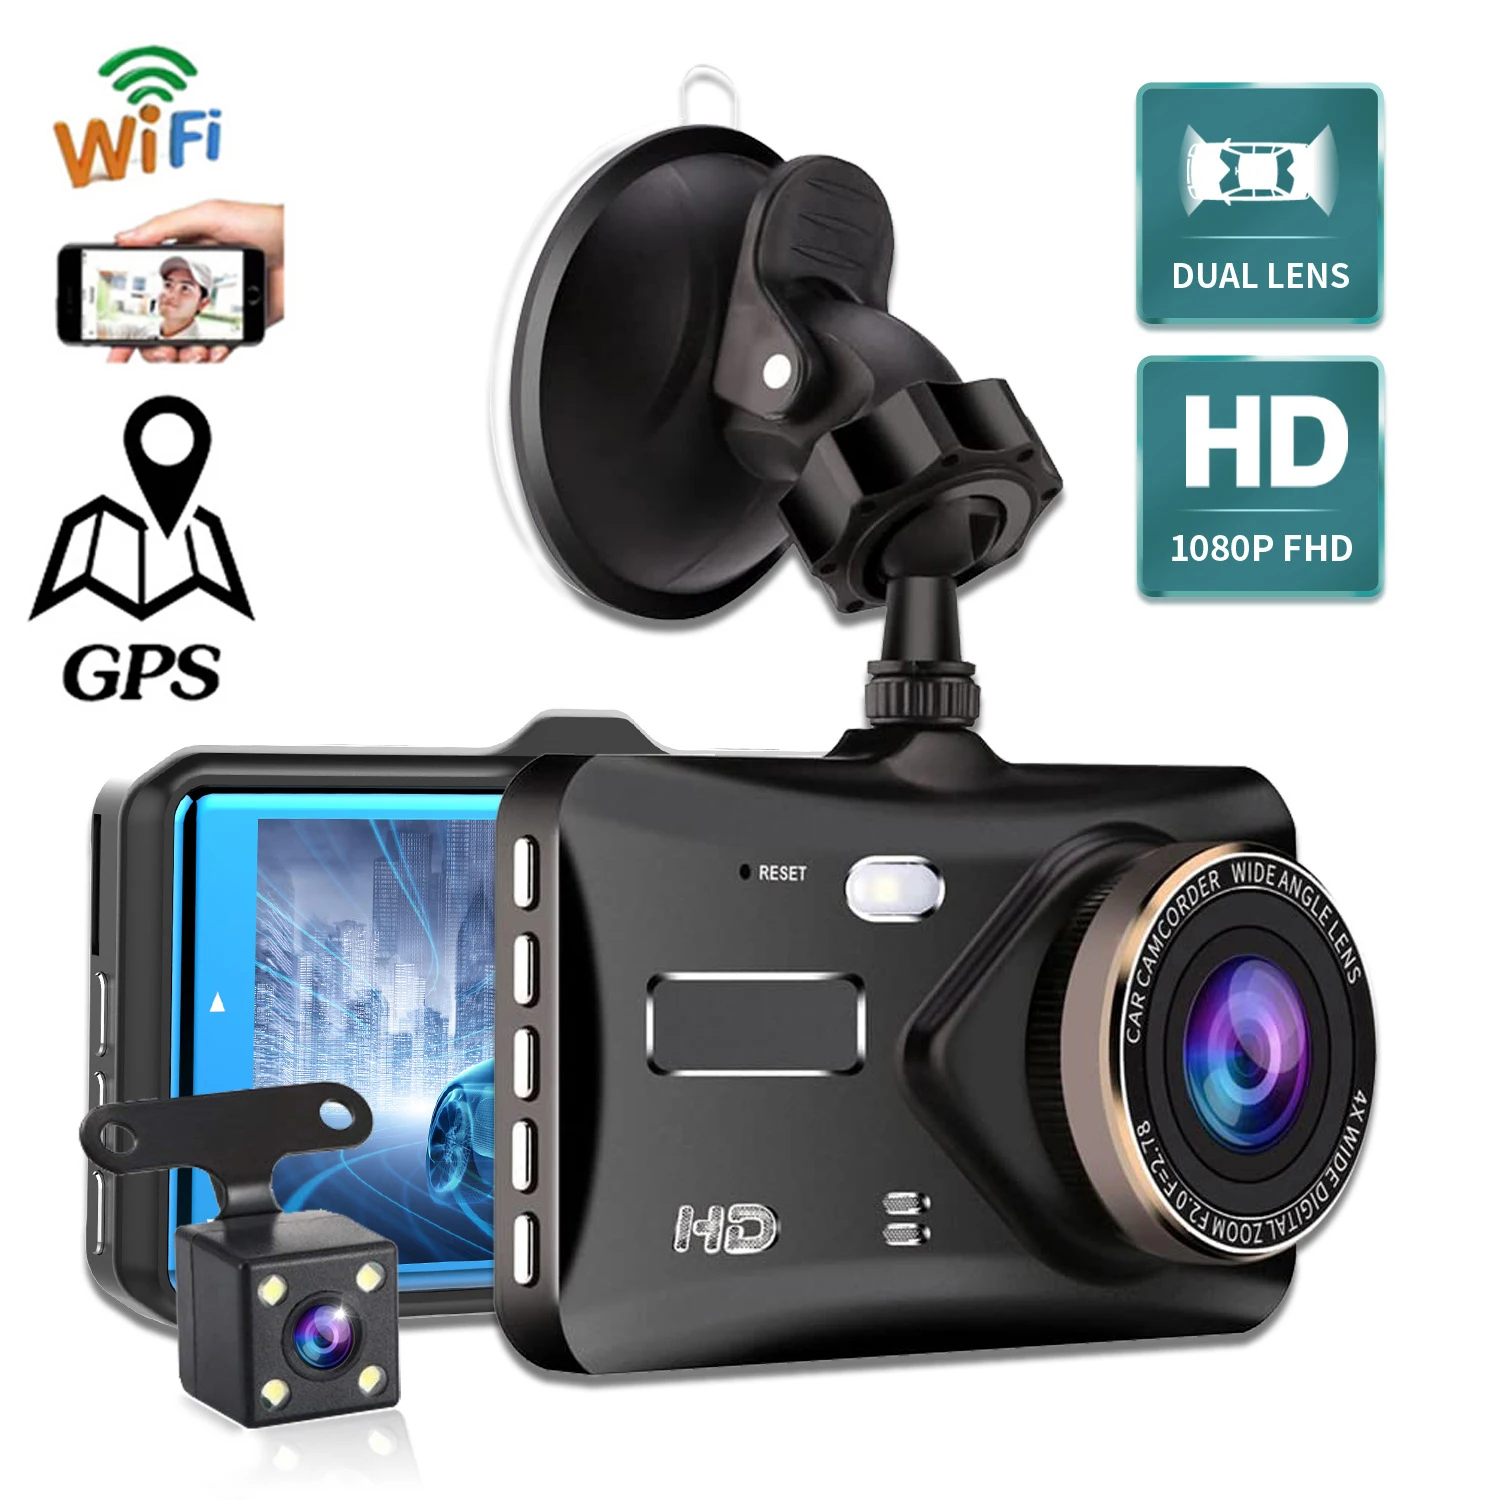 

Автомобильный видеорегистратор WiFi Full HD 1080P, видеорегистратор с камерой заднего вида, Автомобильный видеорегистратор с ночным видением, Автомобильный видеорегистратор, GPS-регистратор, автомобильные аксессуары